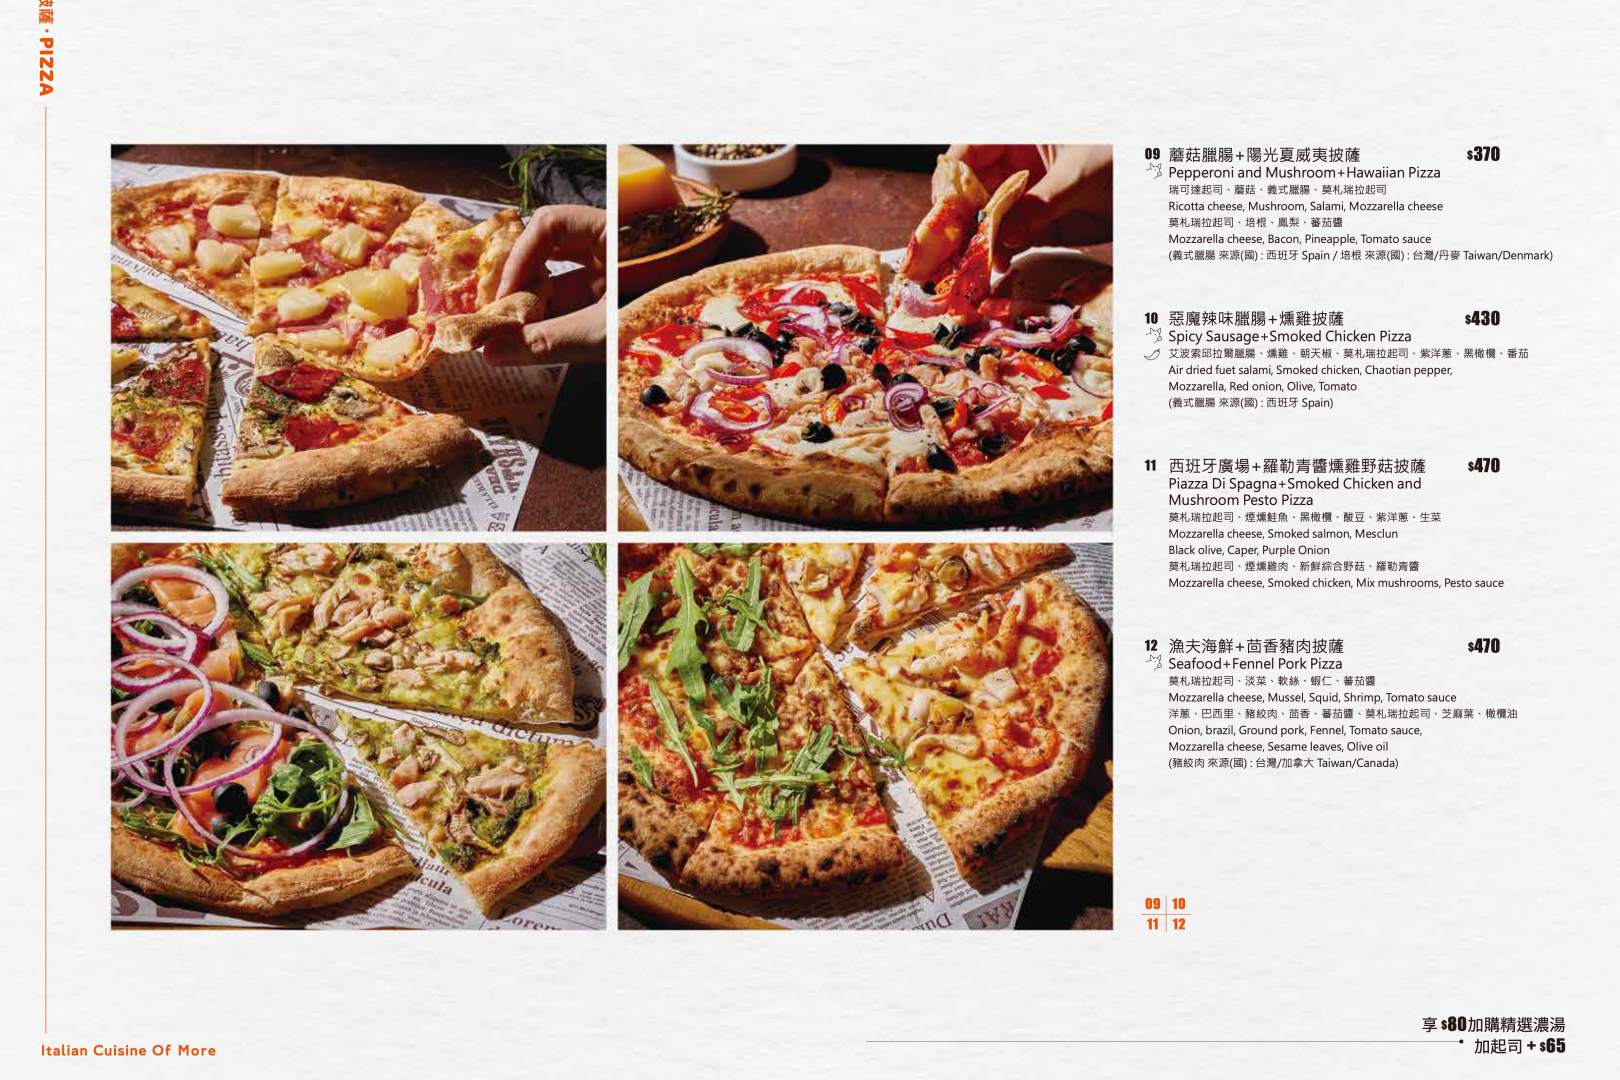 默爾, 默爾菜單, 默爾推薦, 中山美食, 默爾 pasta pizza, MORE默爾義大利餐廳